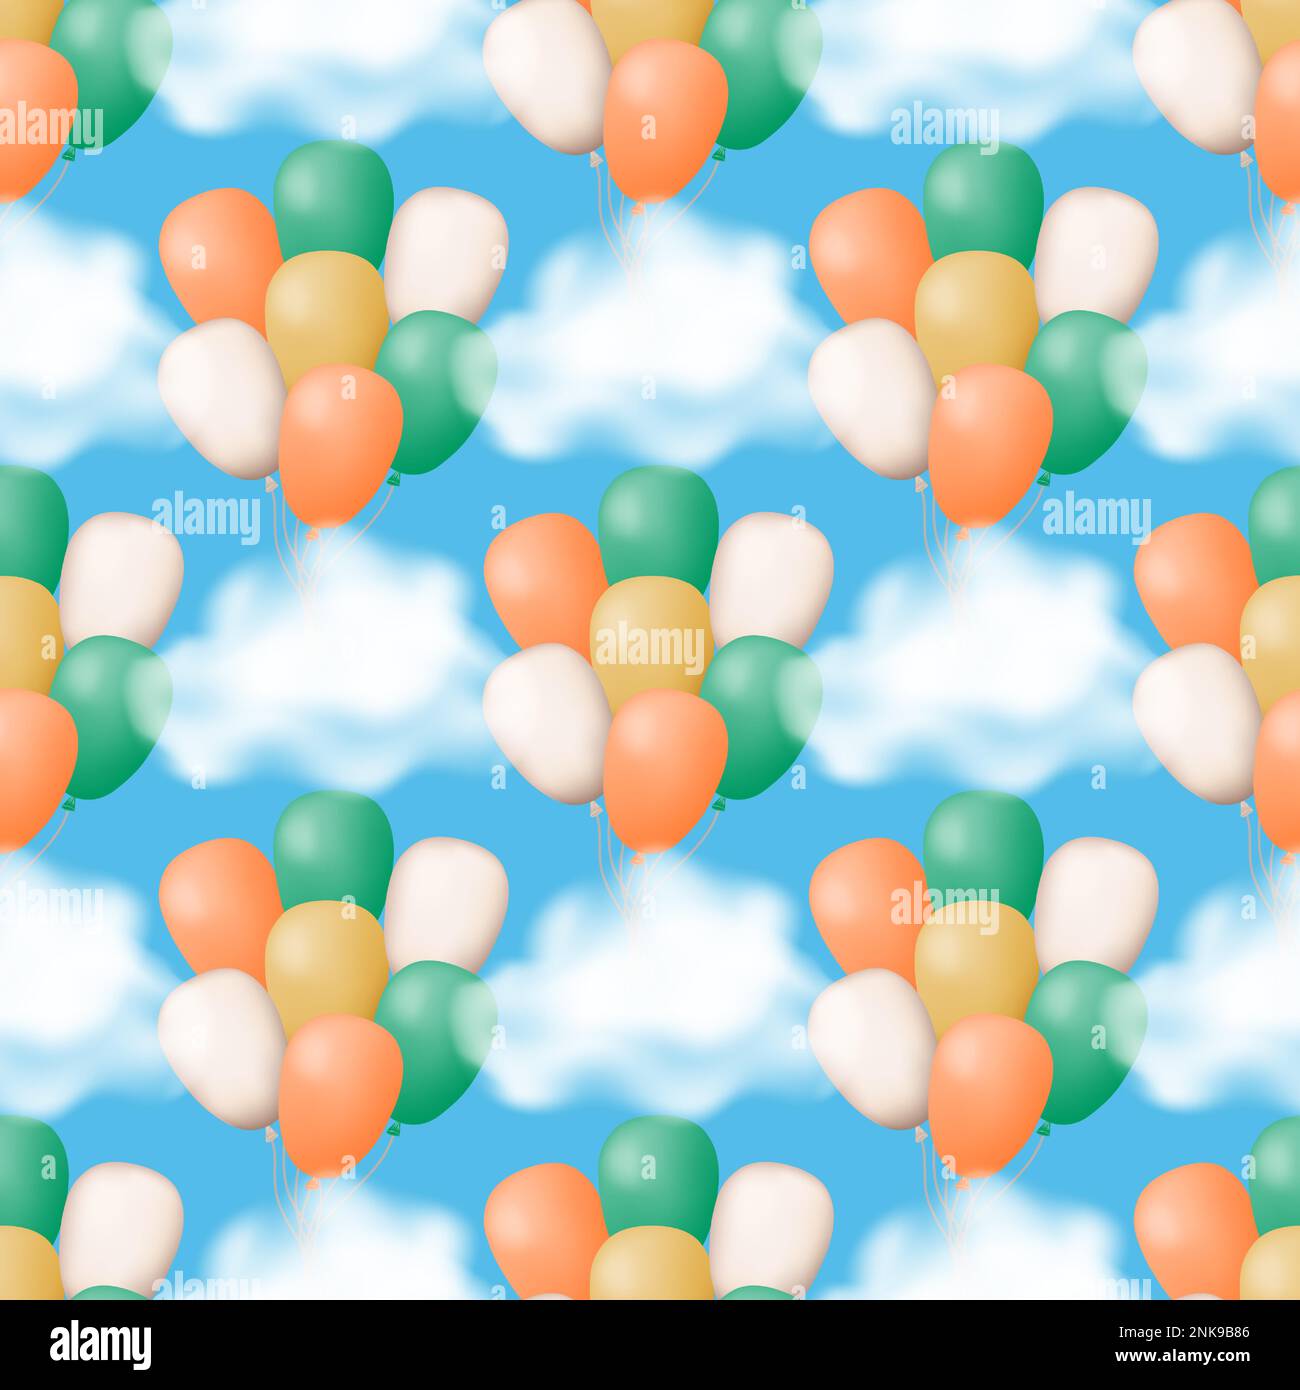 Nahtlose Muster von lebhaften Ballons, die zwischen flauschigen Wolken auf einem ruhigen blauen Hintergrund schweben. Perfekt für Stoff, Tapete, Geschenkpapier. Vektor i Stock Vektor